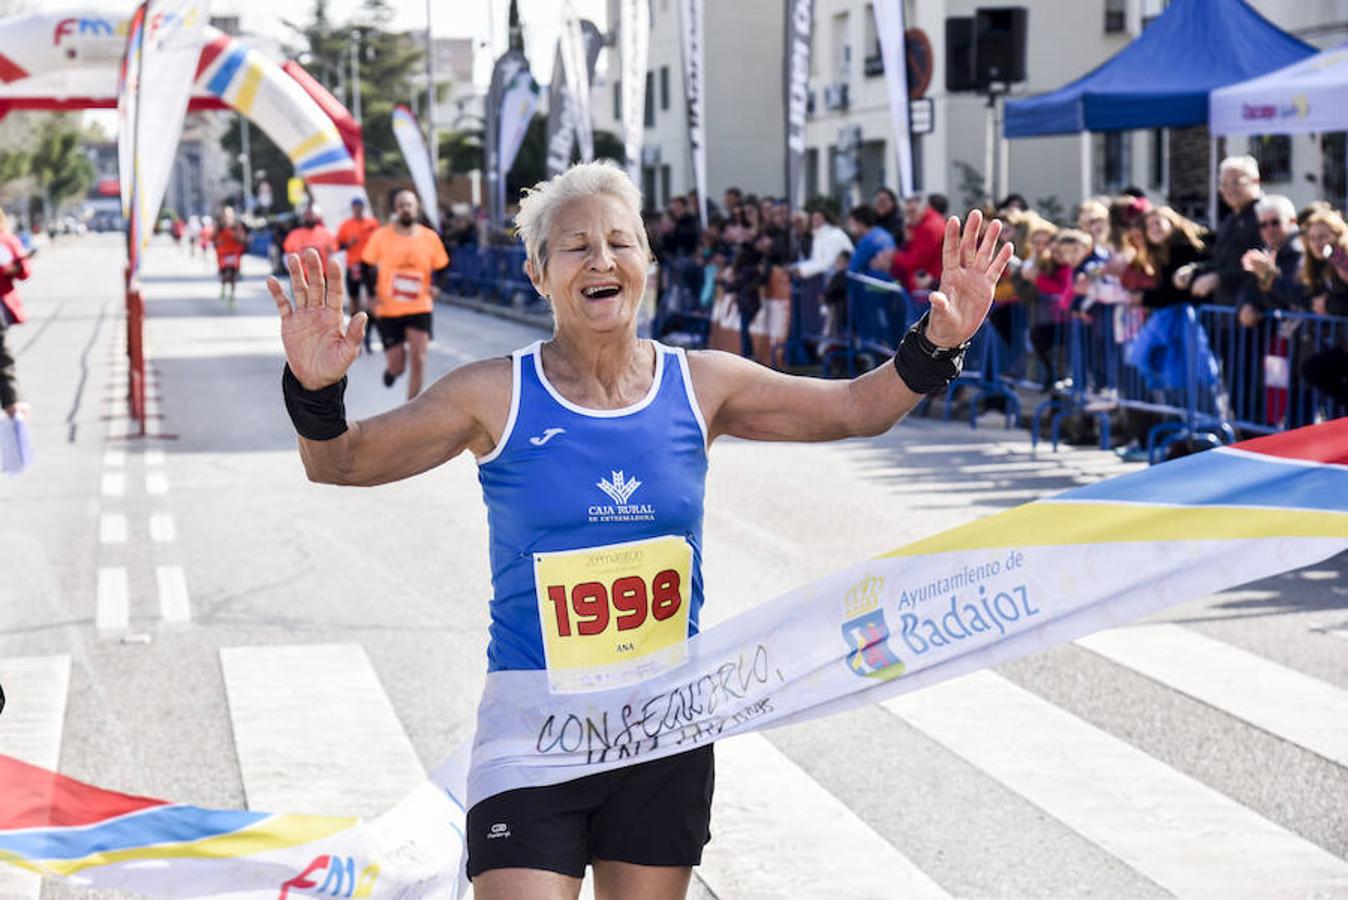 Bruno Paixão vuelve a ganar la maratón y Juan Domingo Gómez llega primero en la media. En la categoría femenina, Mercedes Pila vence en la maratón y Ana Rodríguez, en la media